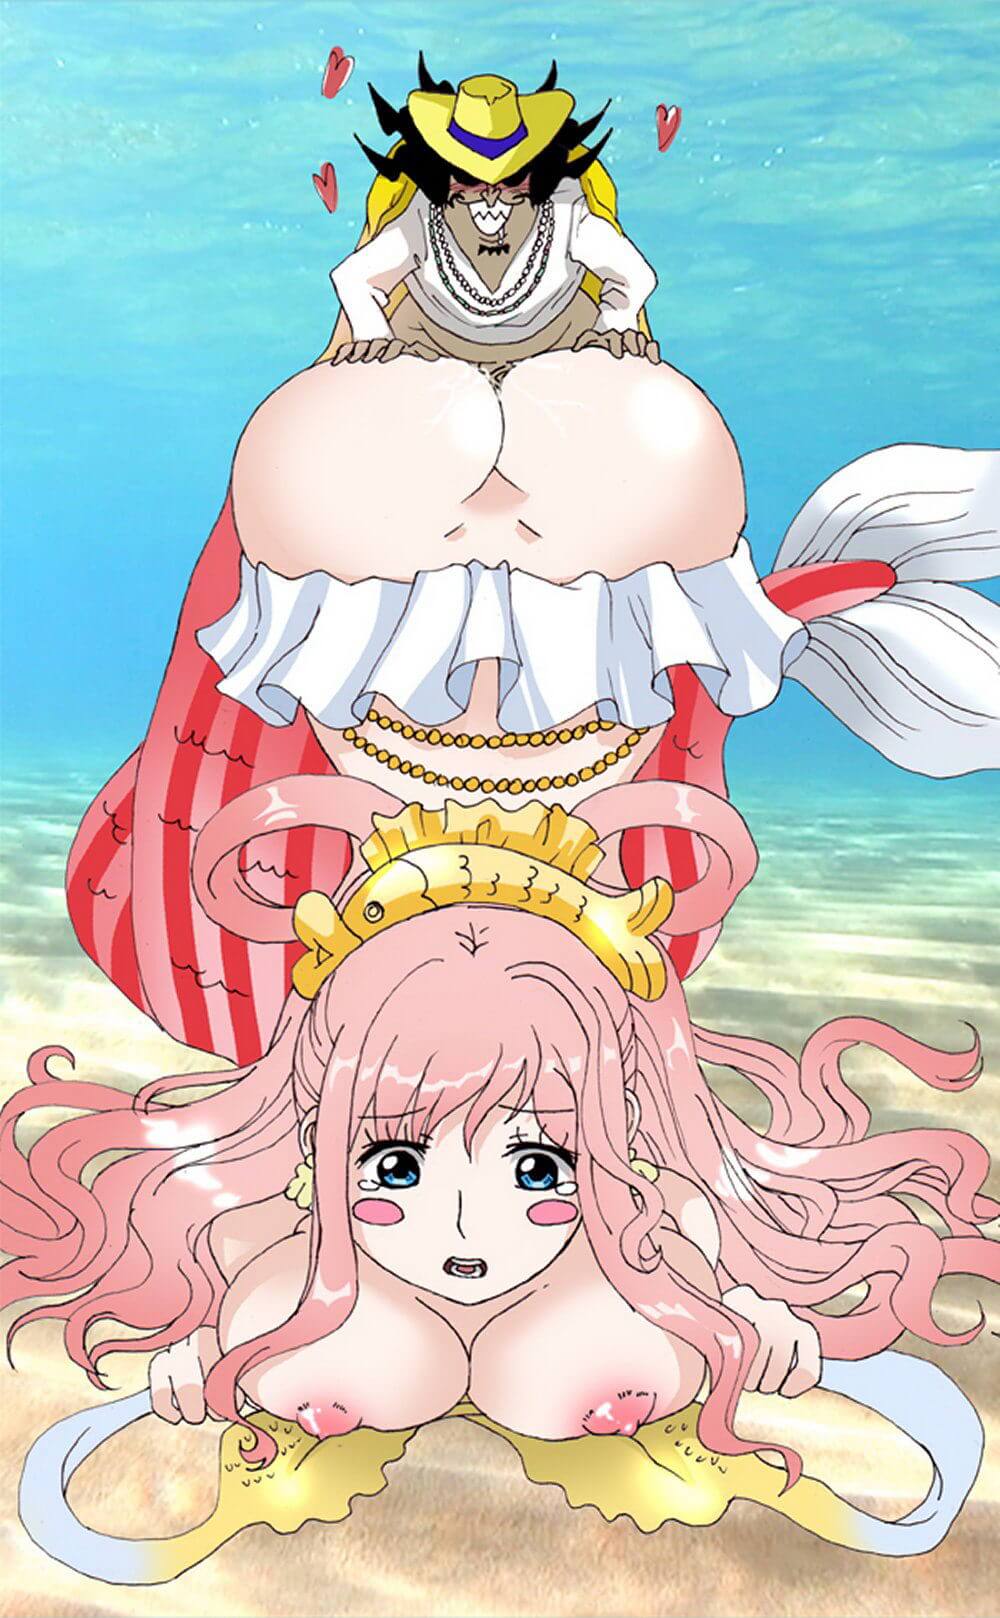 Shirahoshi baisée en levrette a son gros cul martelé sur la plage - One Piece Hentai